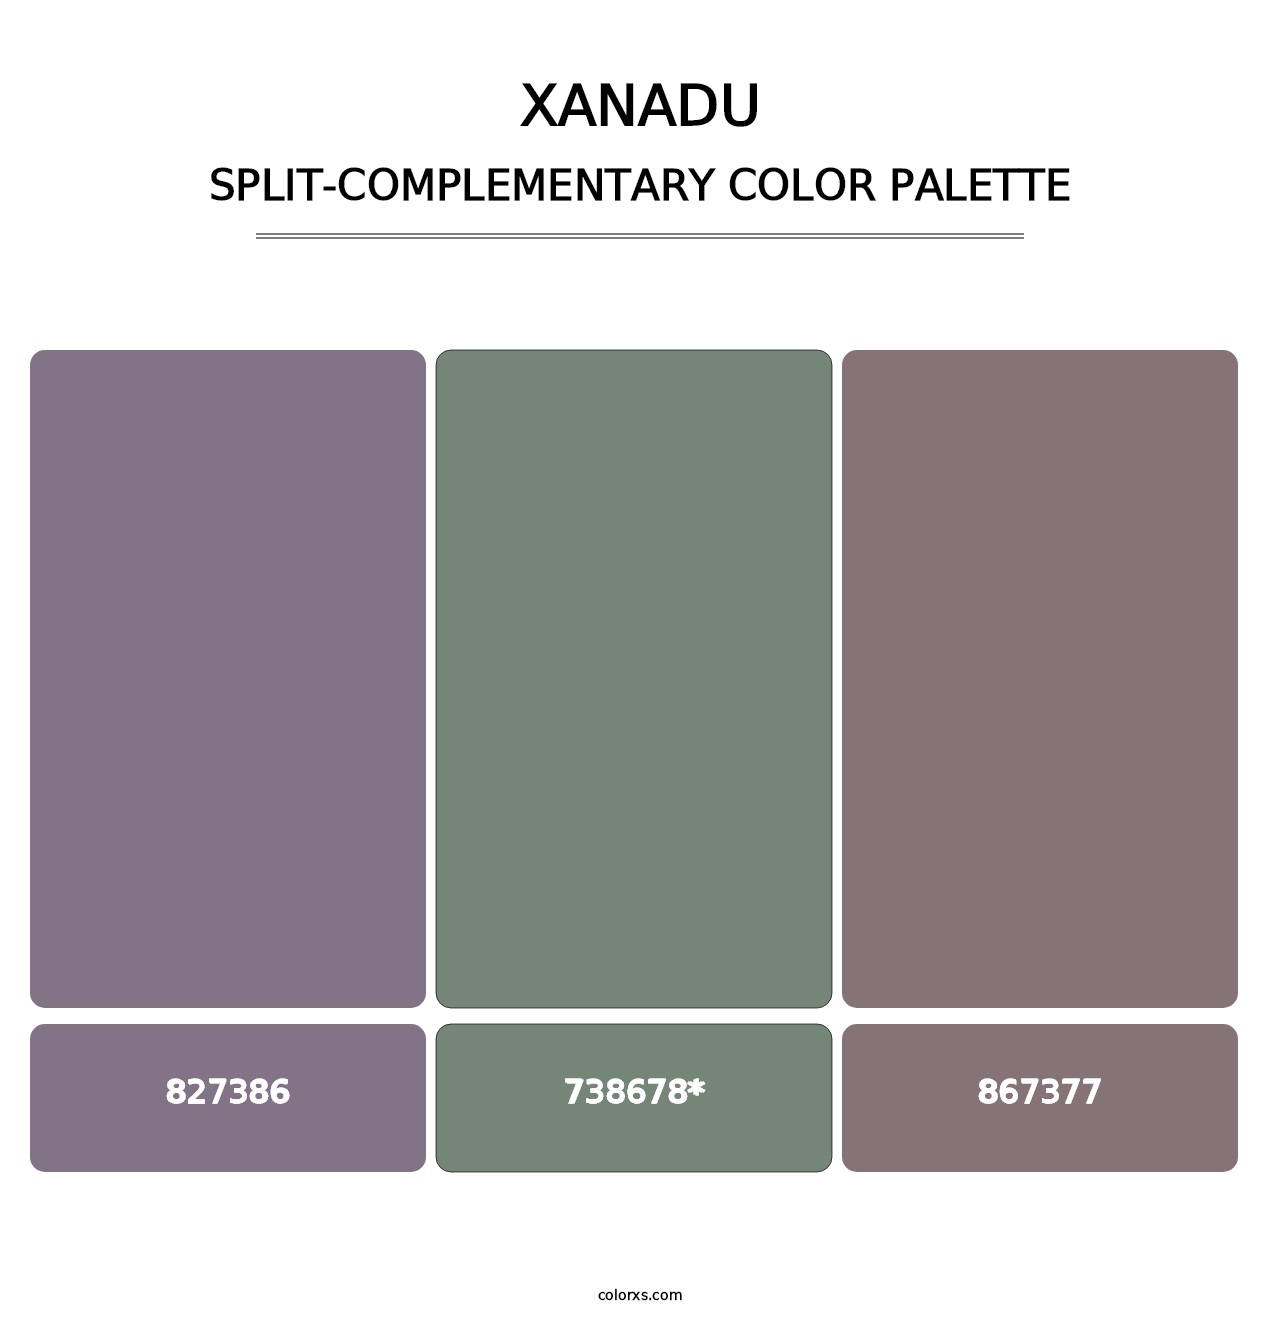 Xanadu - Split-Complementary Color Palette